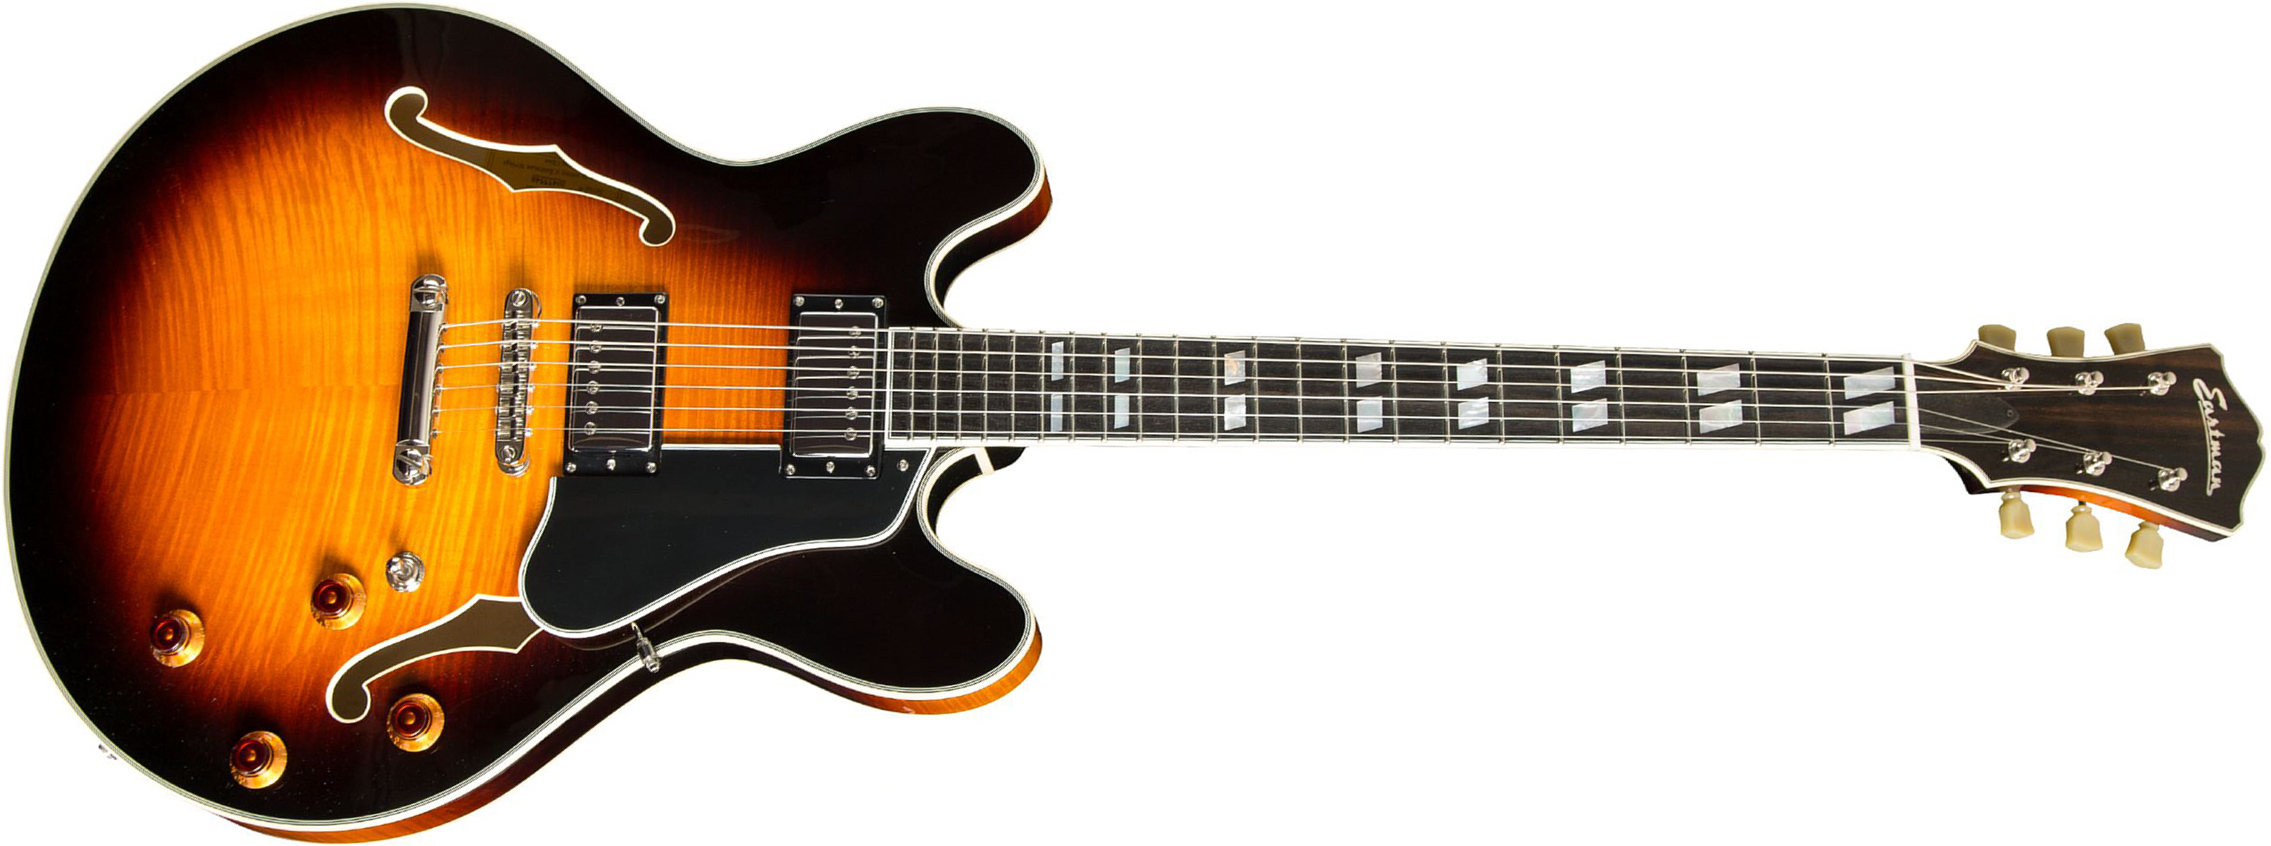 Eastman T486 Thinline Laminate Tout Erable Hh Seymour Duncan Ht Eb - Sunburst - Semi-hollow electric guitar - Main picture